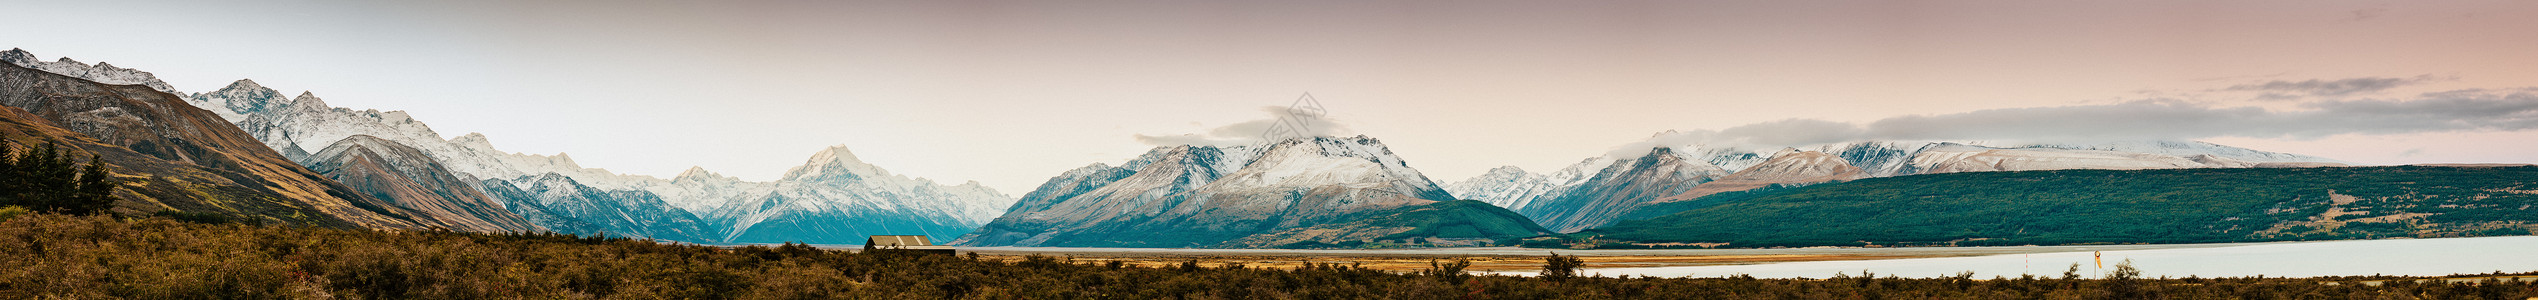 底斯山新西兰库克山和拉佩罗斯山峰日落 冒险 岛 顶峰背景